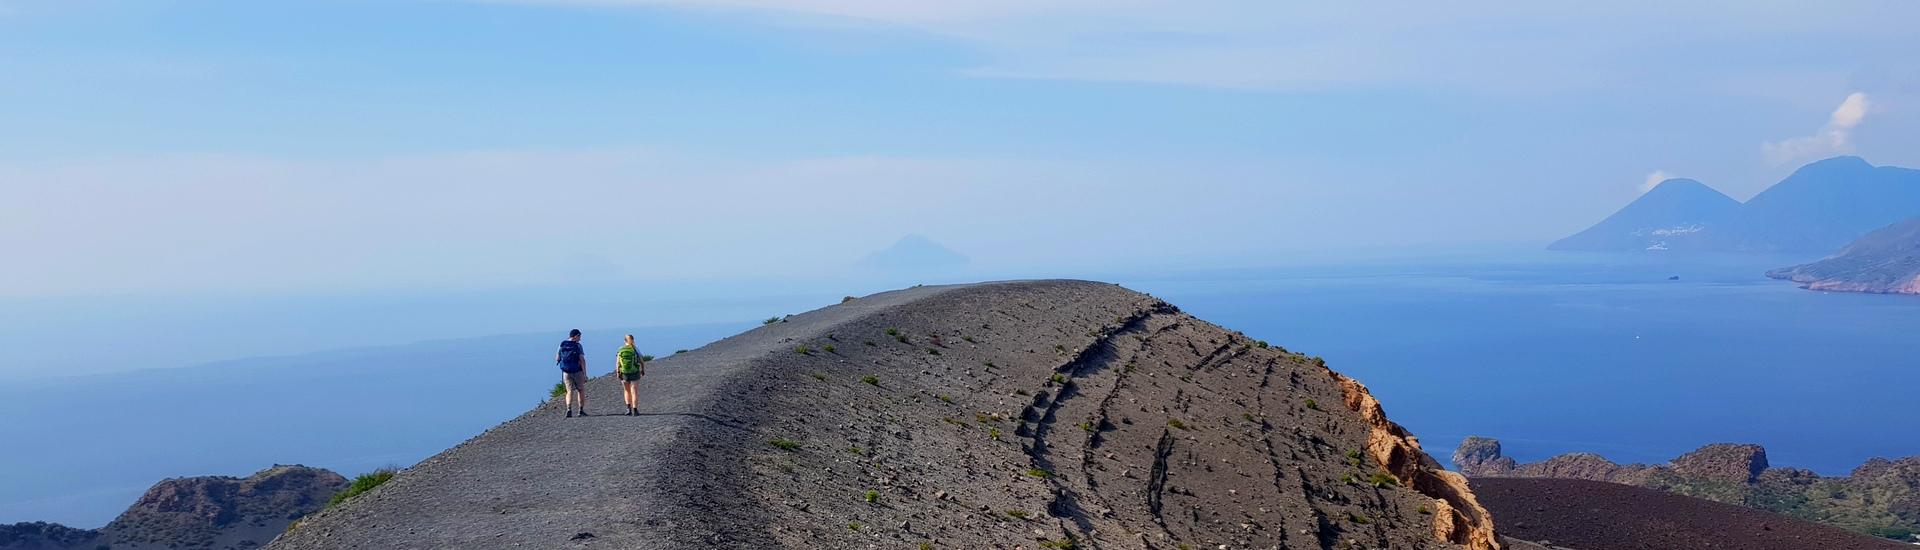 Etna i Wyspy Liparyjskie - kraina wulkanów